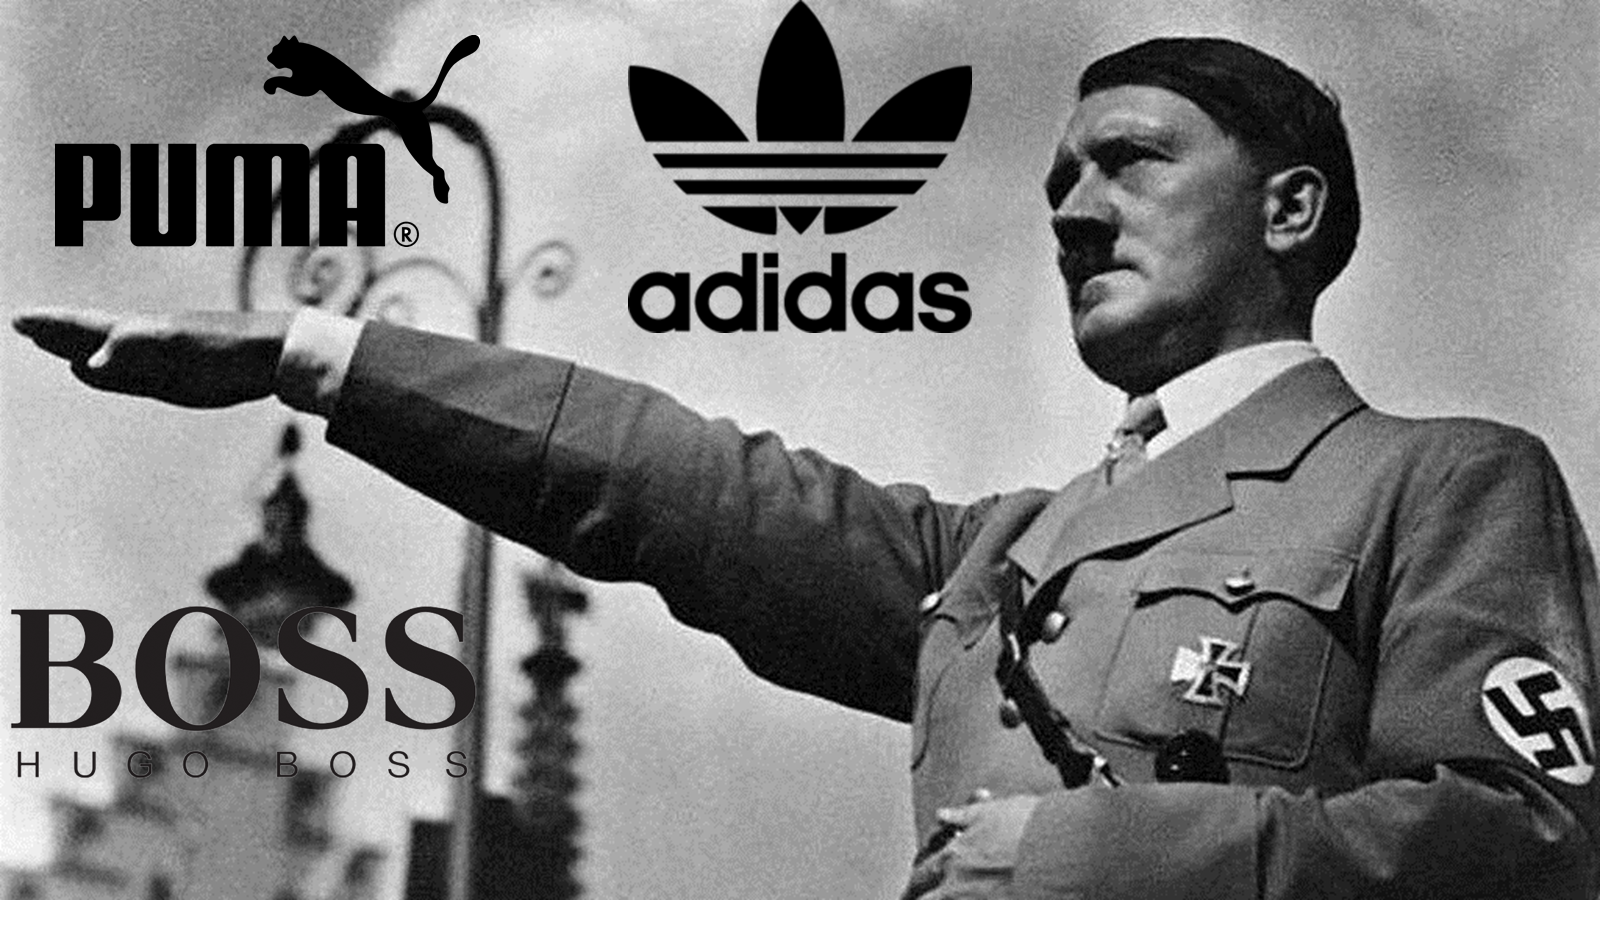 Misterios historia: Adidas, PUMA, Boss y los nazis.